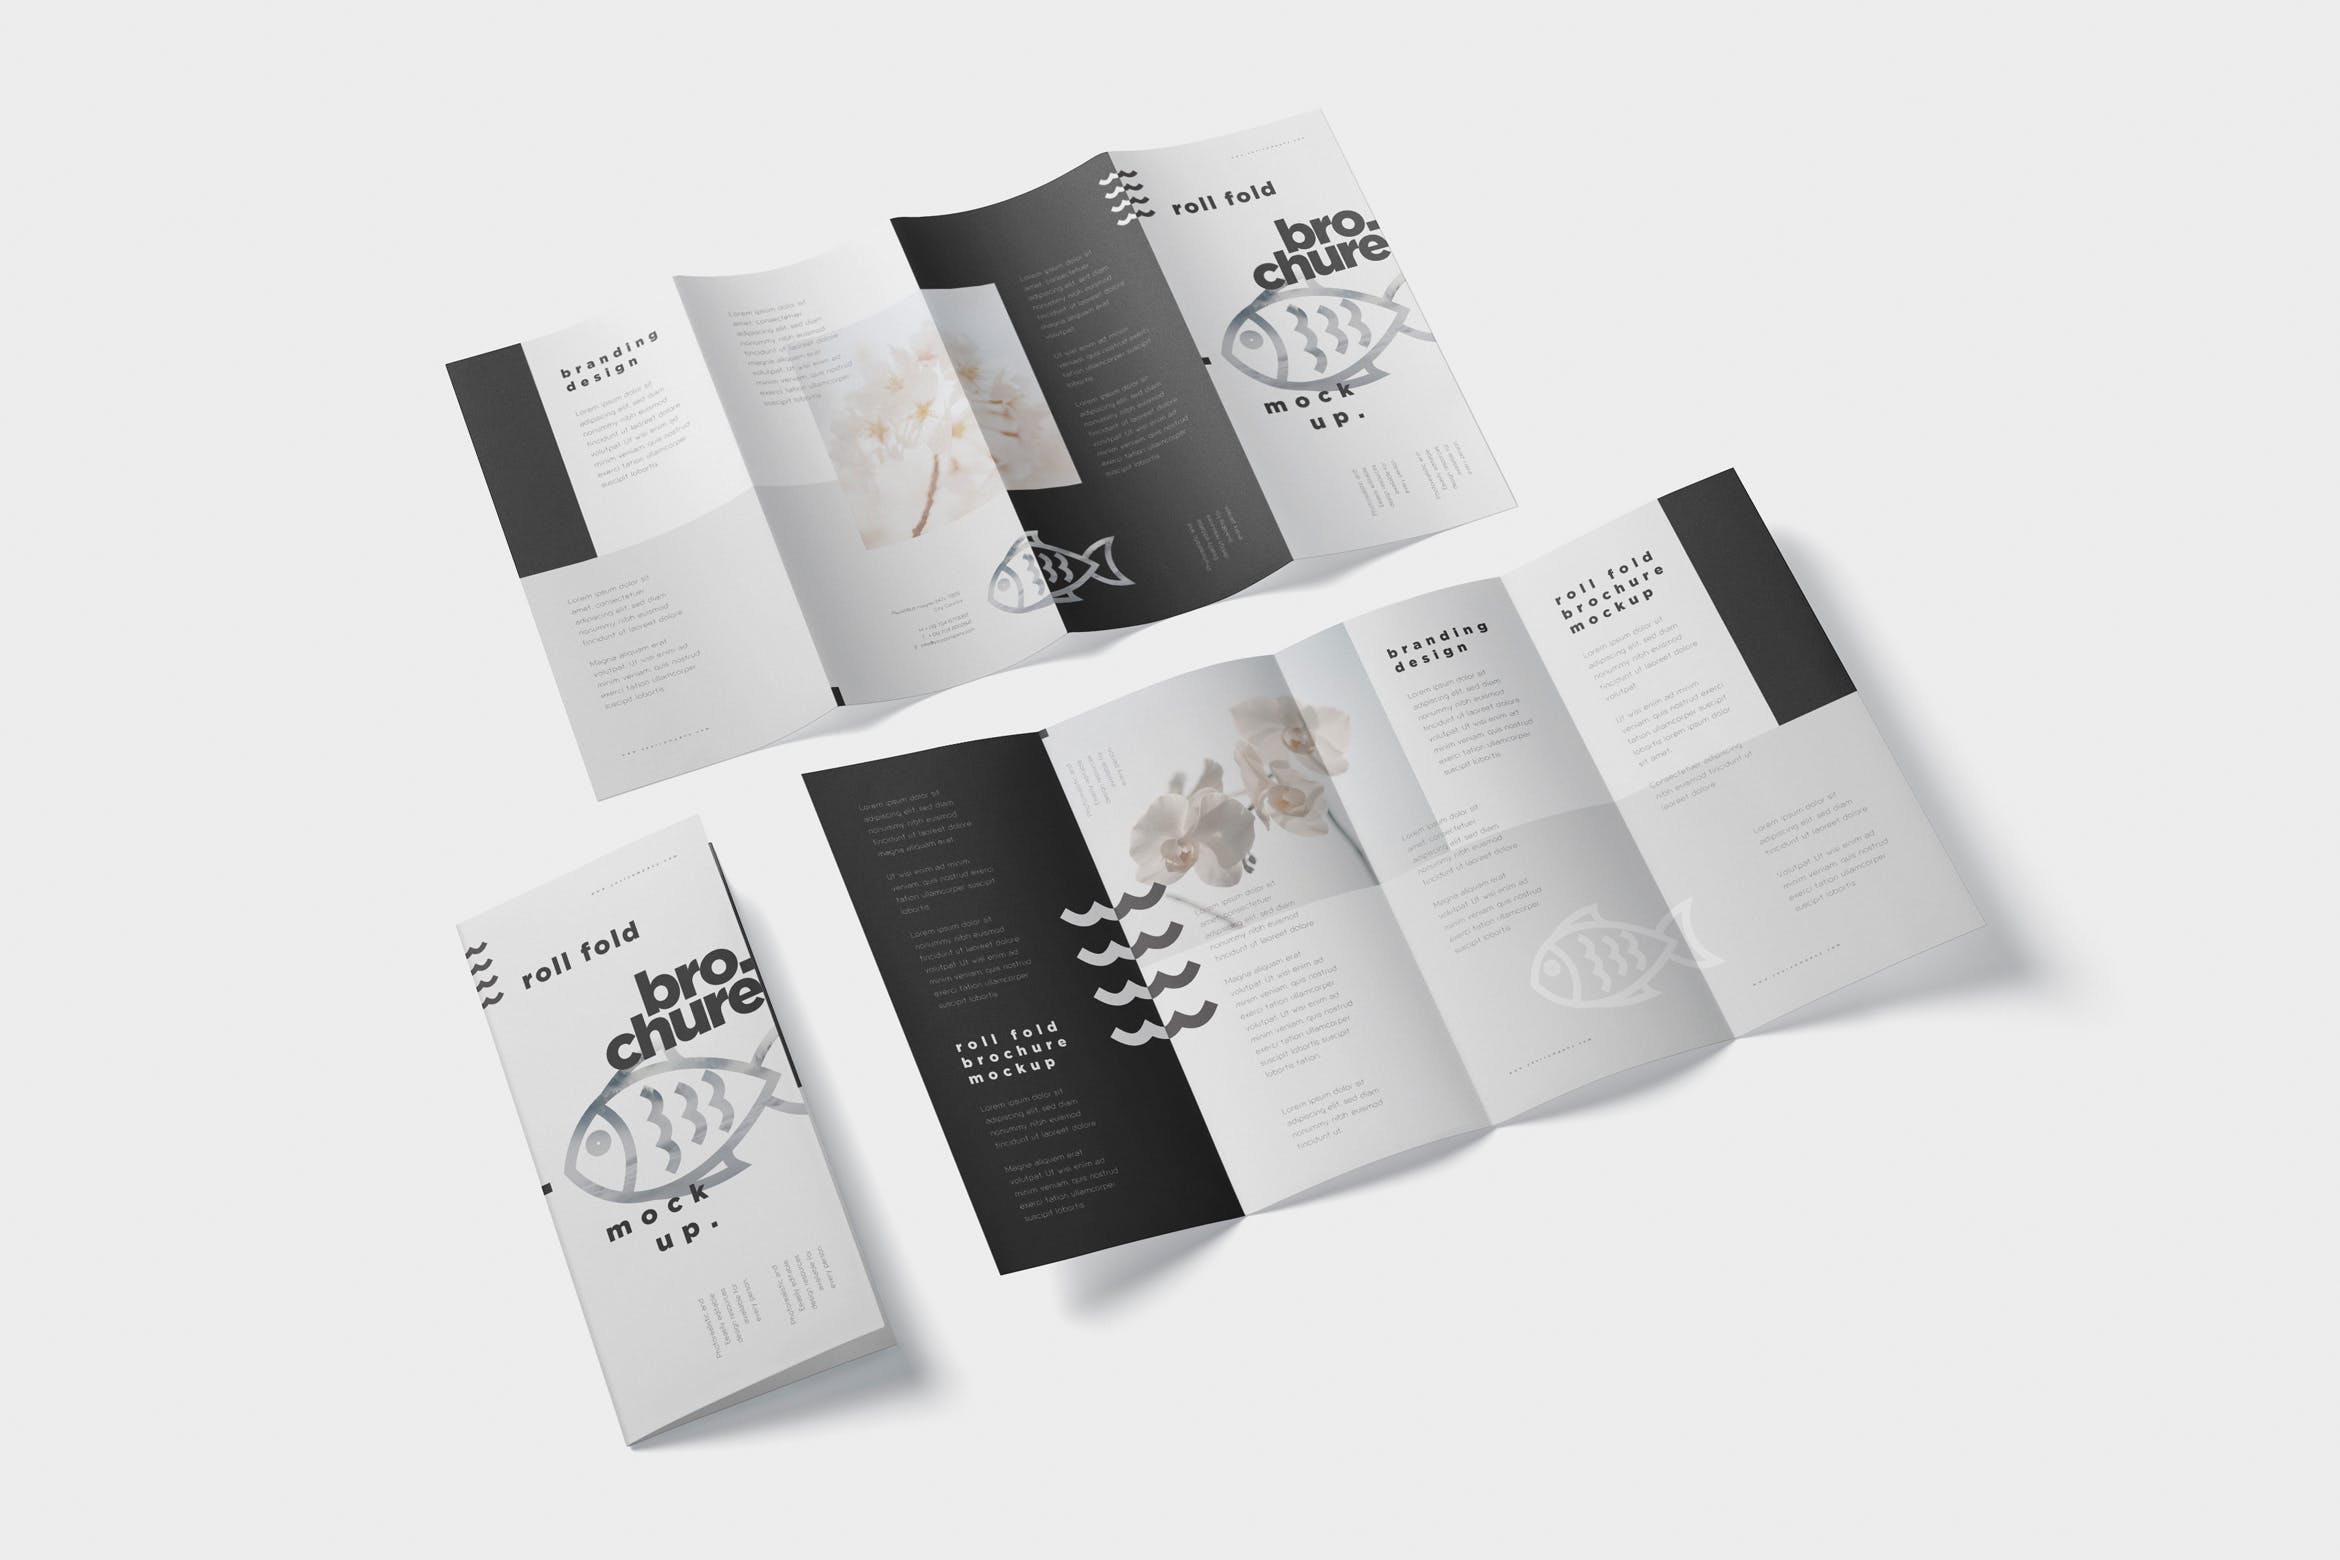 折叠设计风格企业传单/宣传册设计样机素材库精选 Roll-Fold Brochure Mockup – DL DIN Lang Size插图